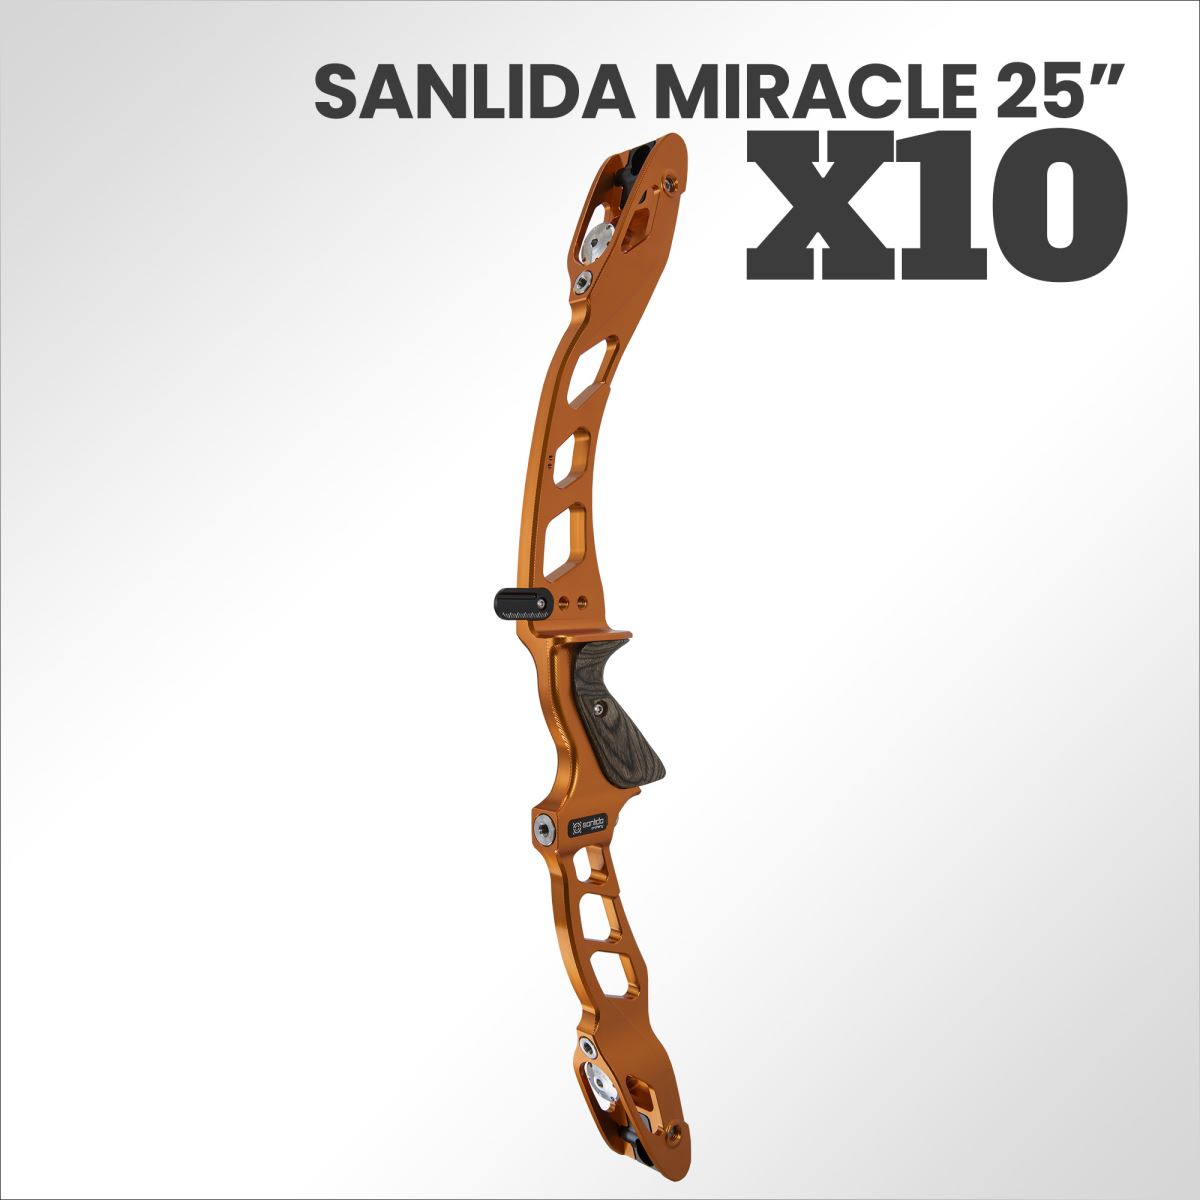 Scopri il nuovo forgiato Sanlida Miracle X10